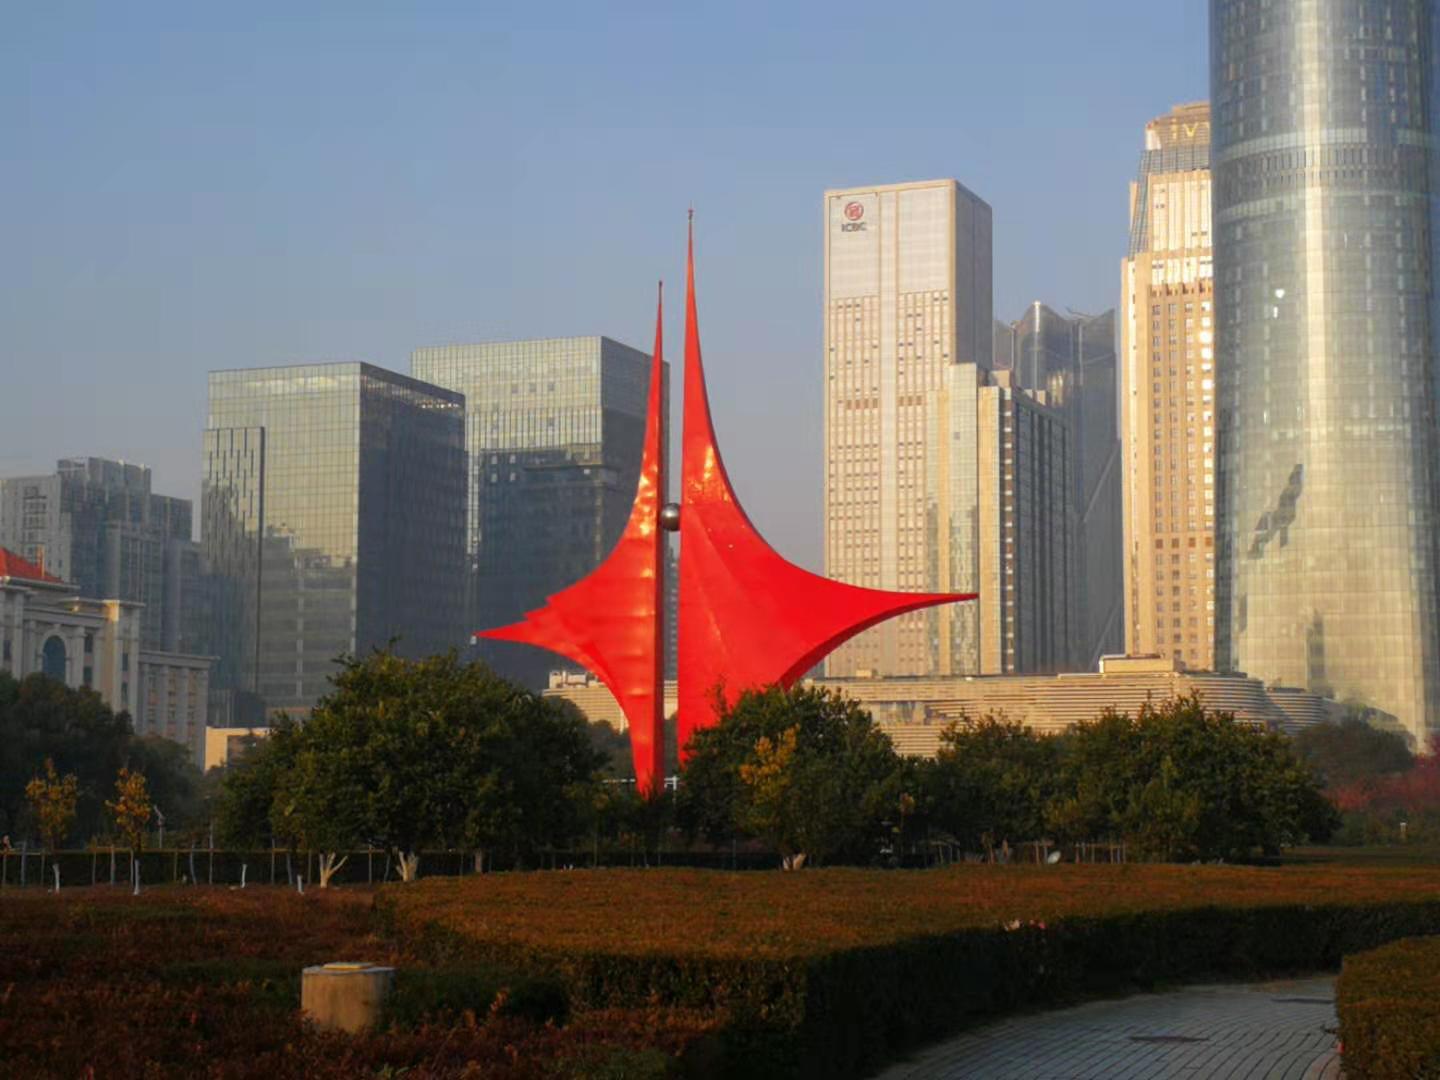 2019中国维生素产业发展高层论坛在南昌开幕